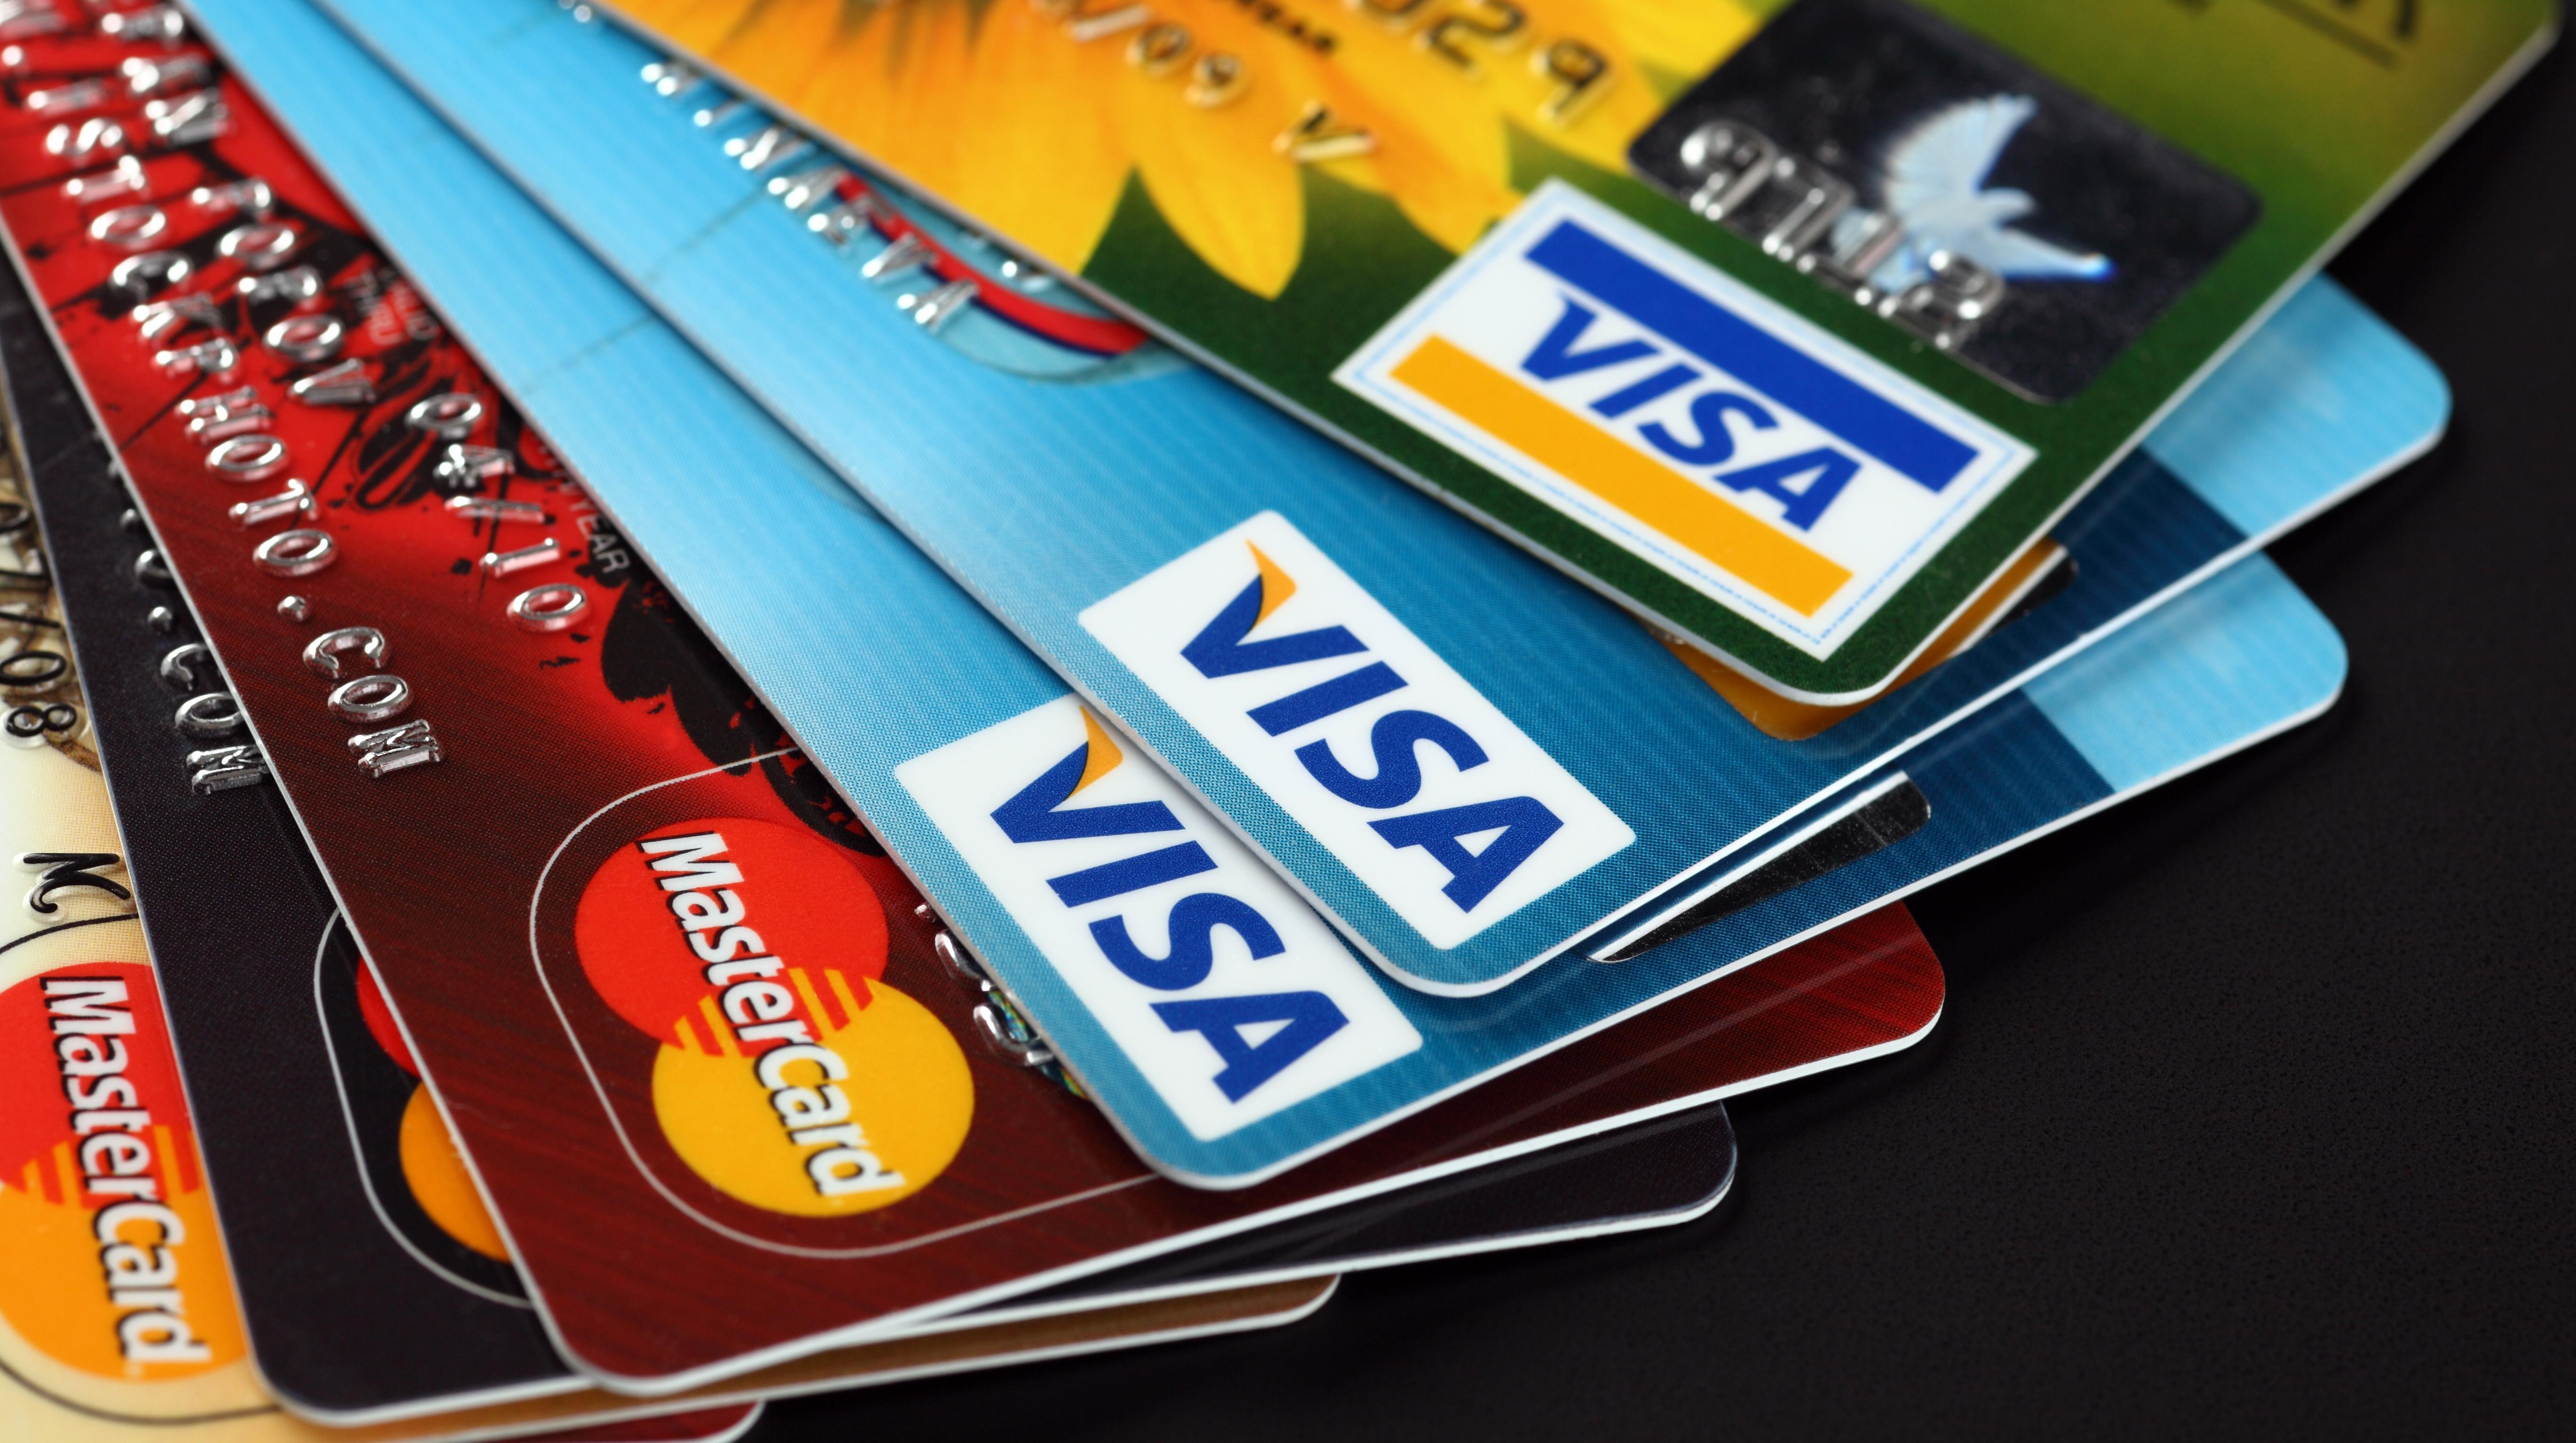 815209-plastic-visa-credit-cards-closeup.jpg